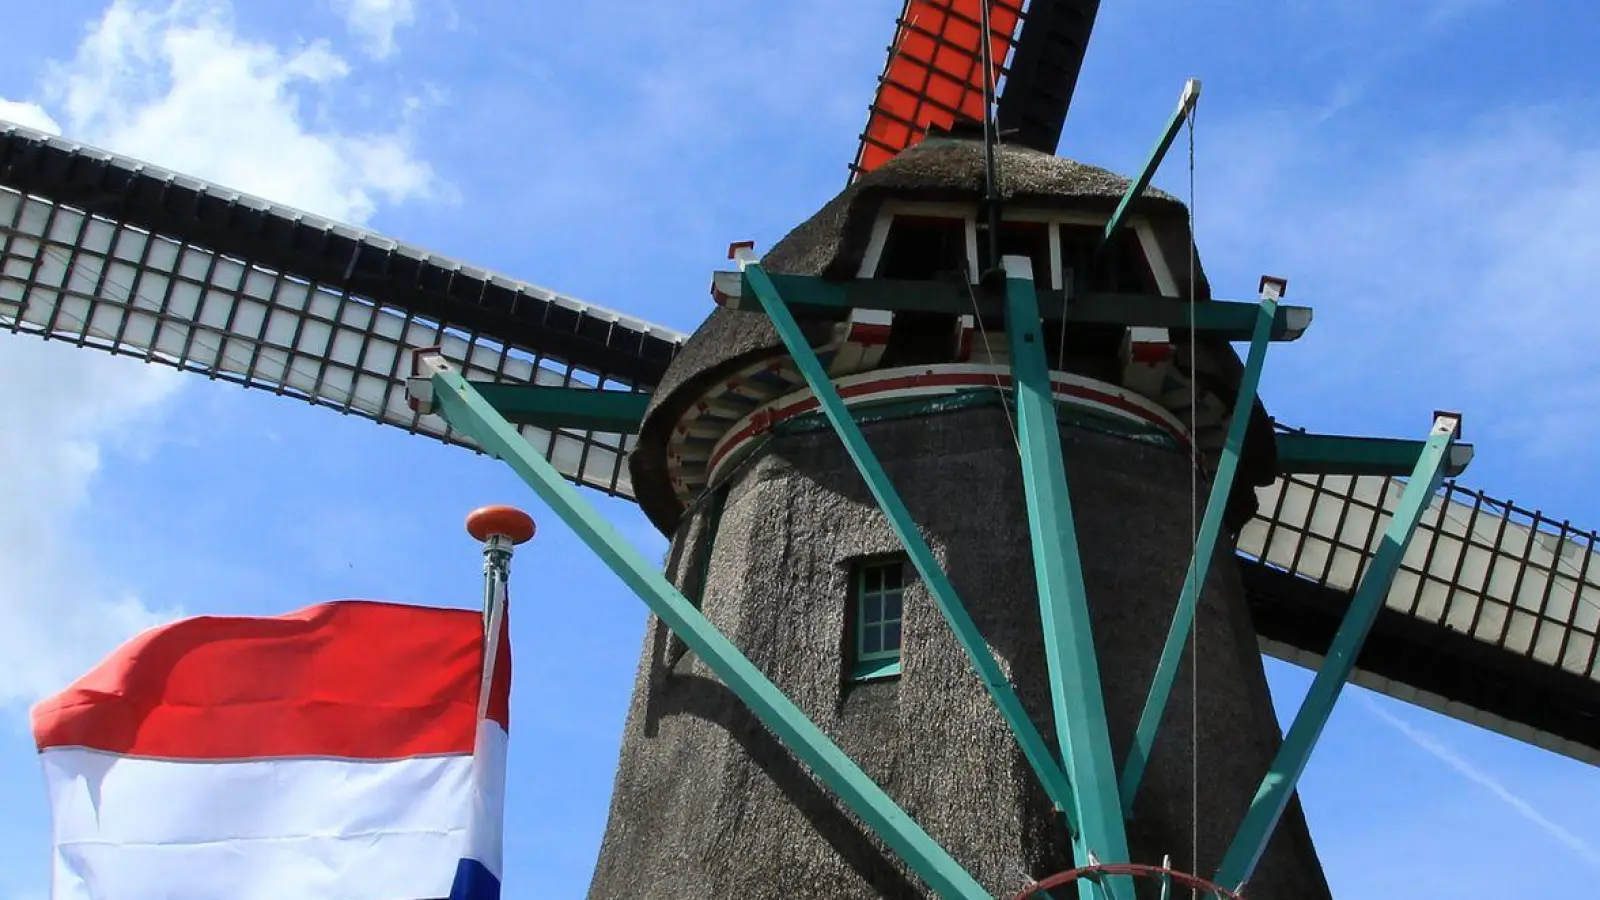 Die Windkraftwerke von Zaandam: Besucher stehen auf der Galerie einer der Windmühlen. (Foto: Bernd F. Meier/dpa-tmn/dpa)